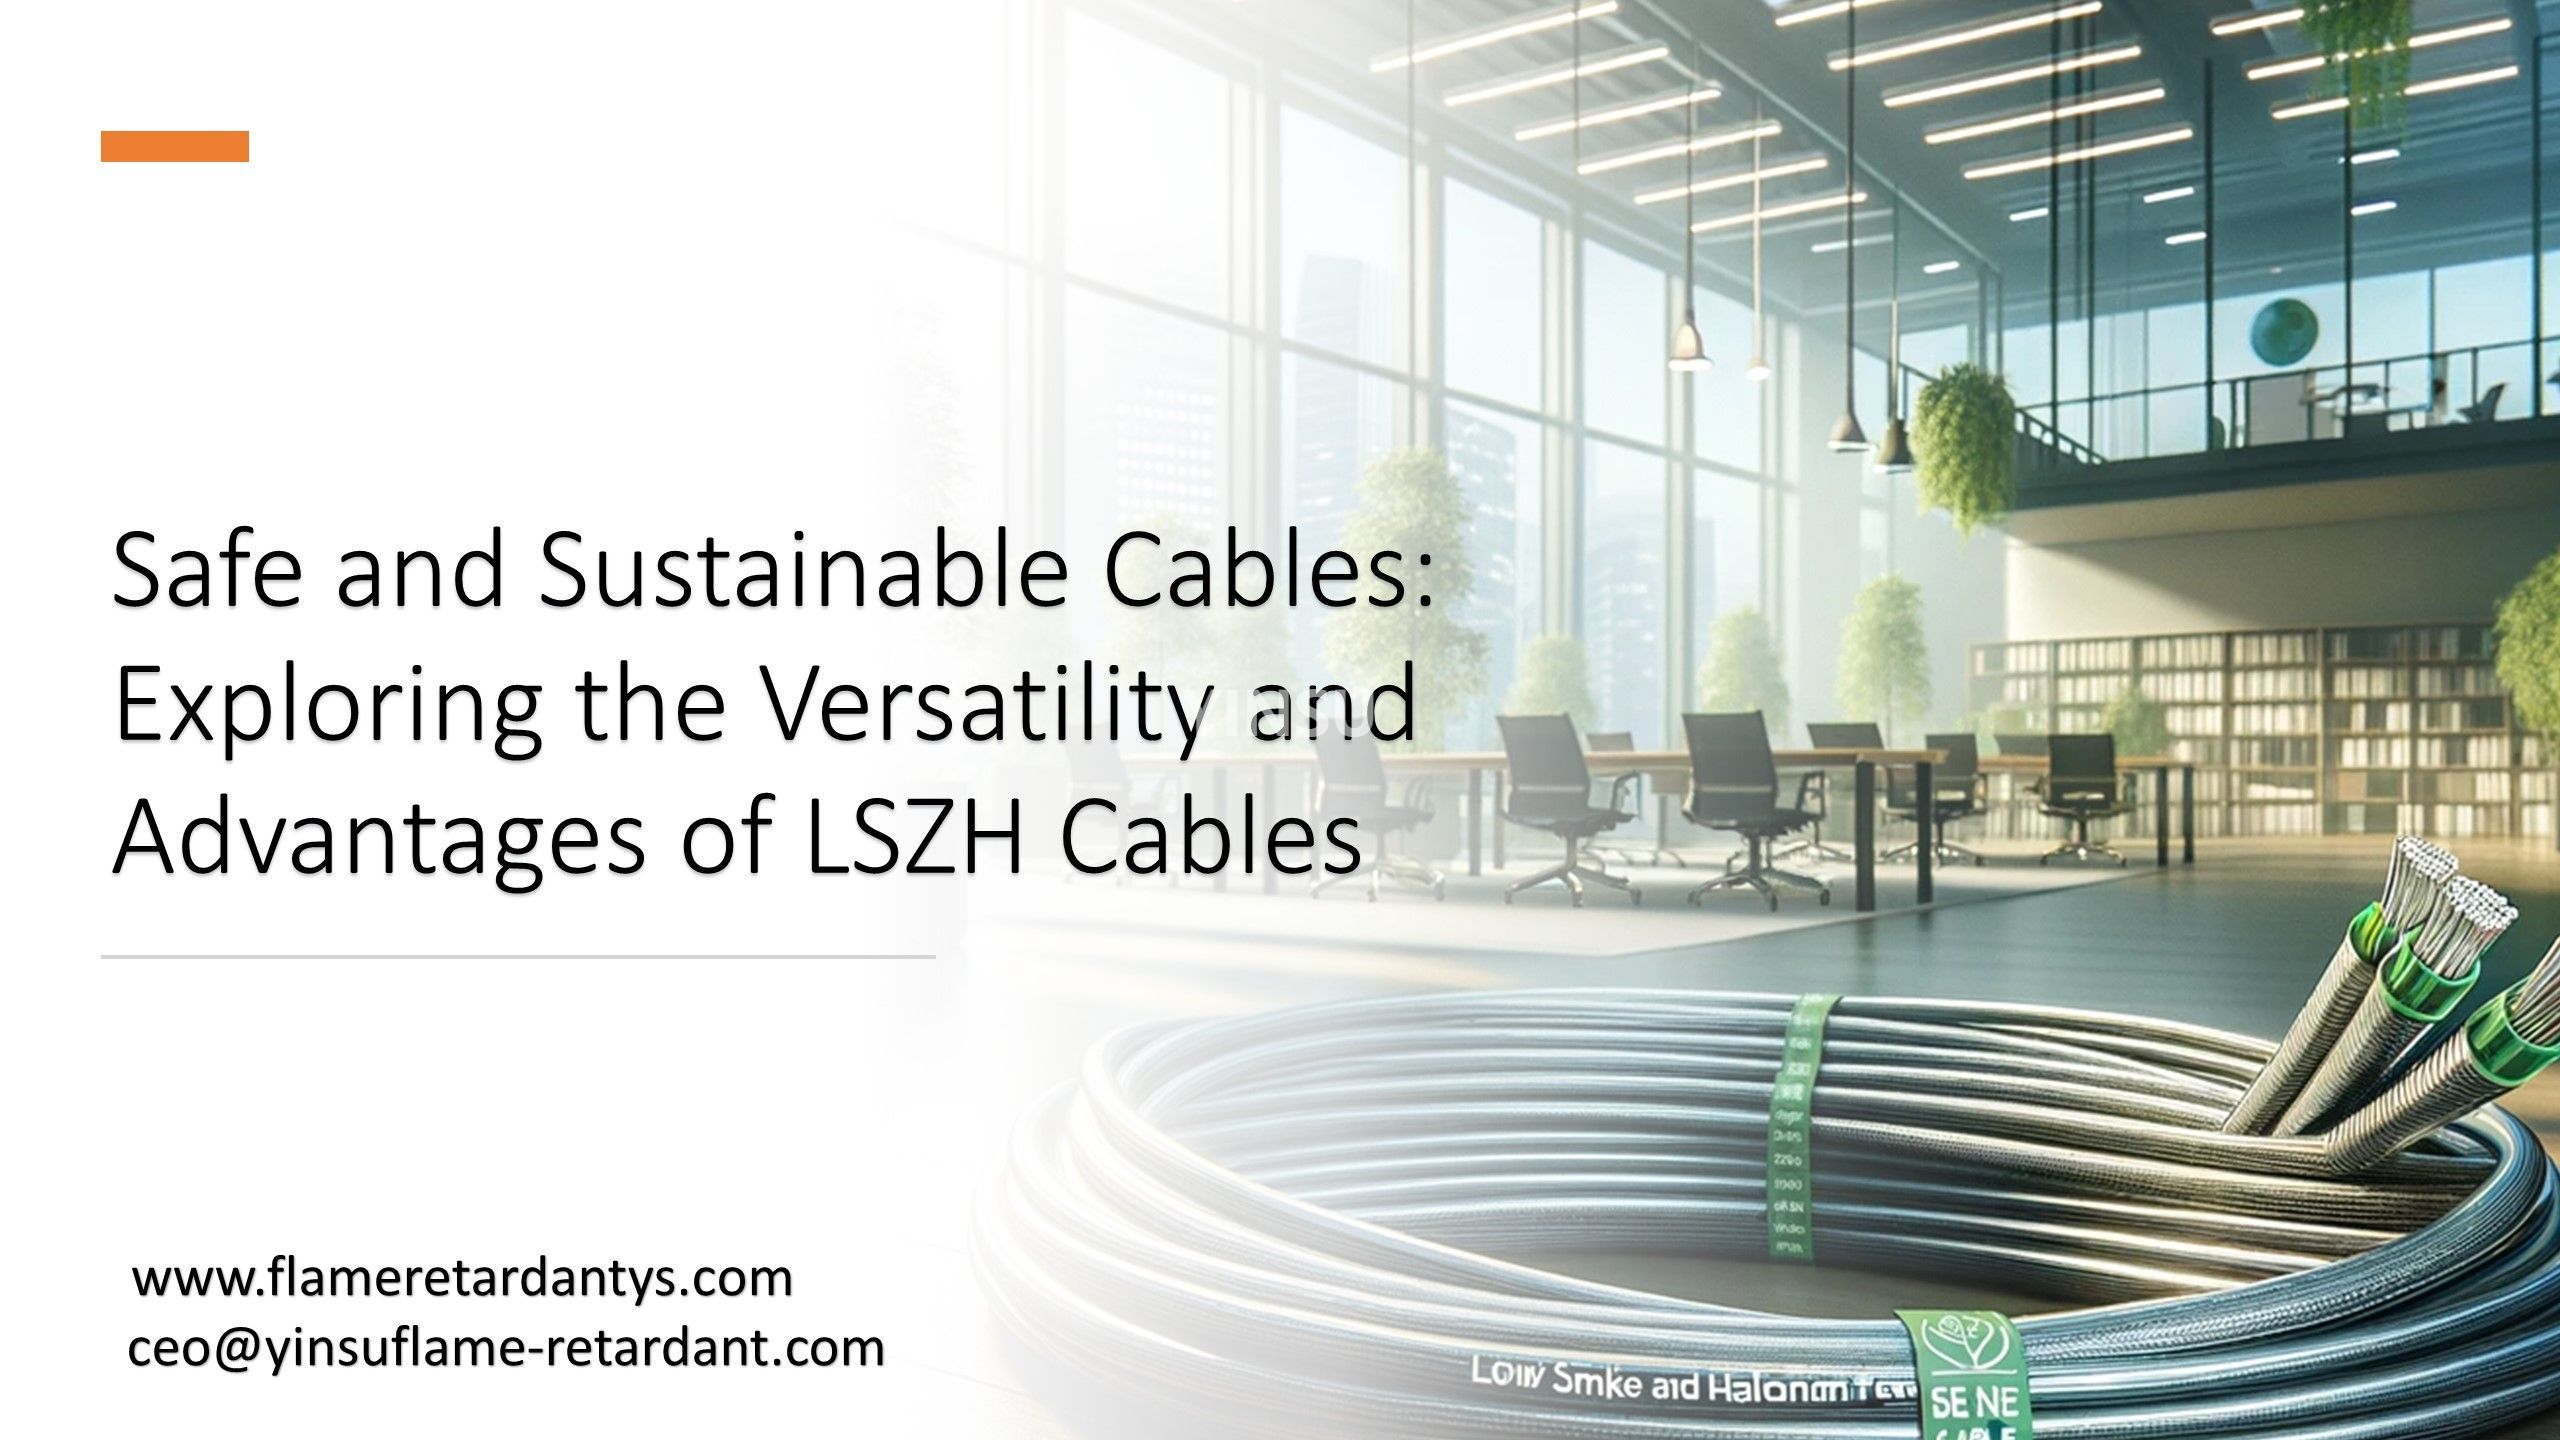 3.1 Cables seguros y sostenibles Exploración de la versatilidad y las ventajas de los cables LSZH